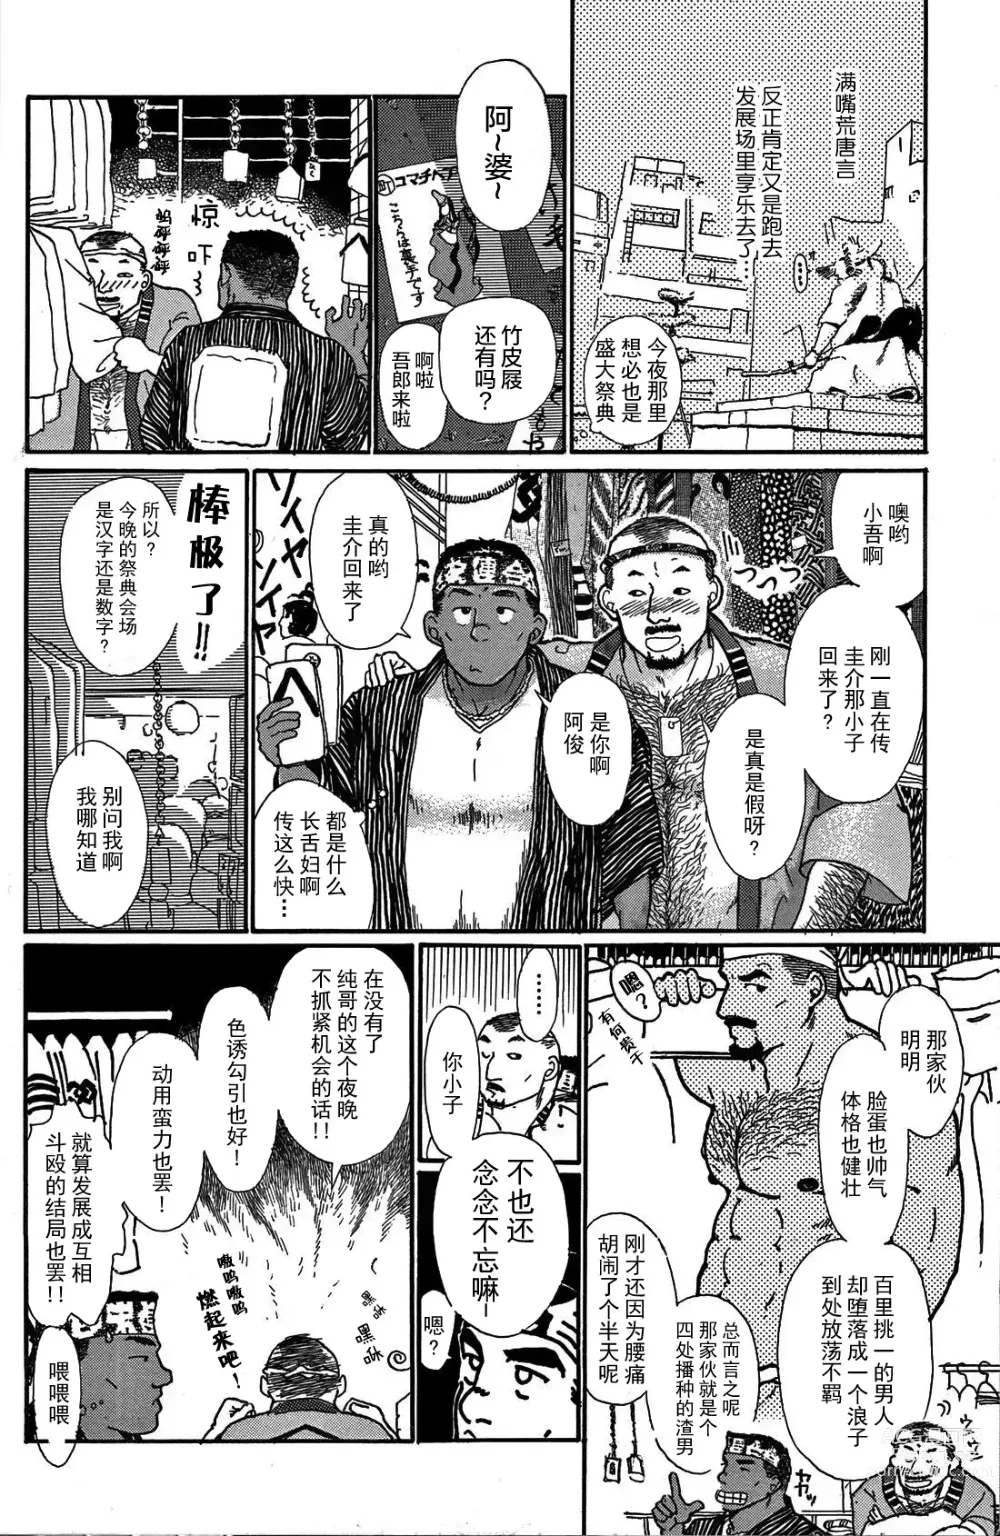 Page 9 of manga 纯情-第一章-纯情!!